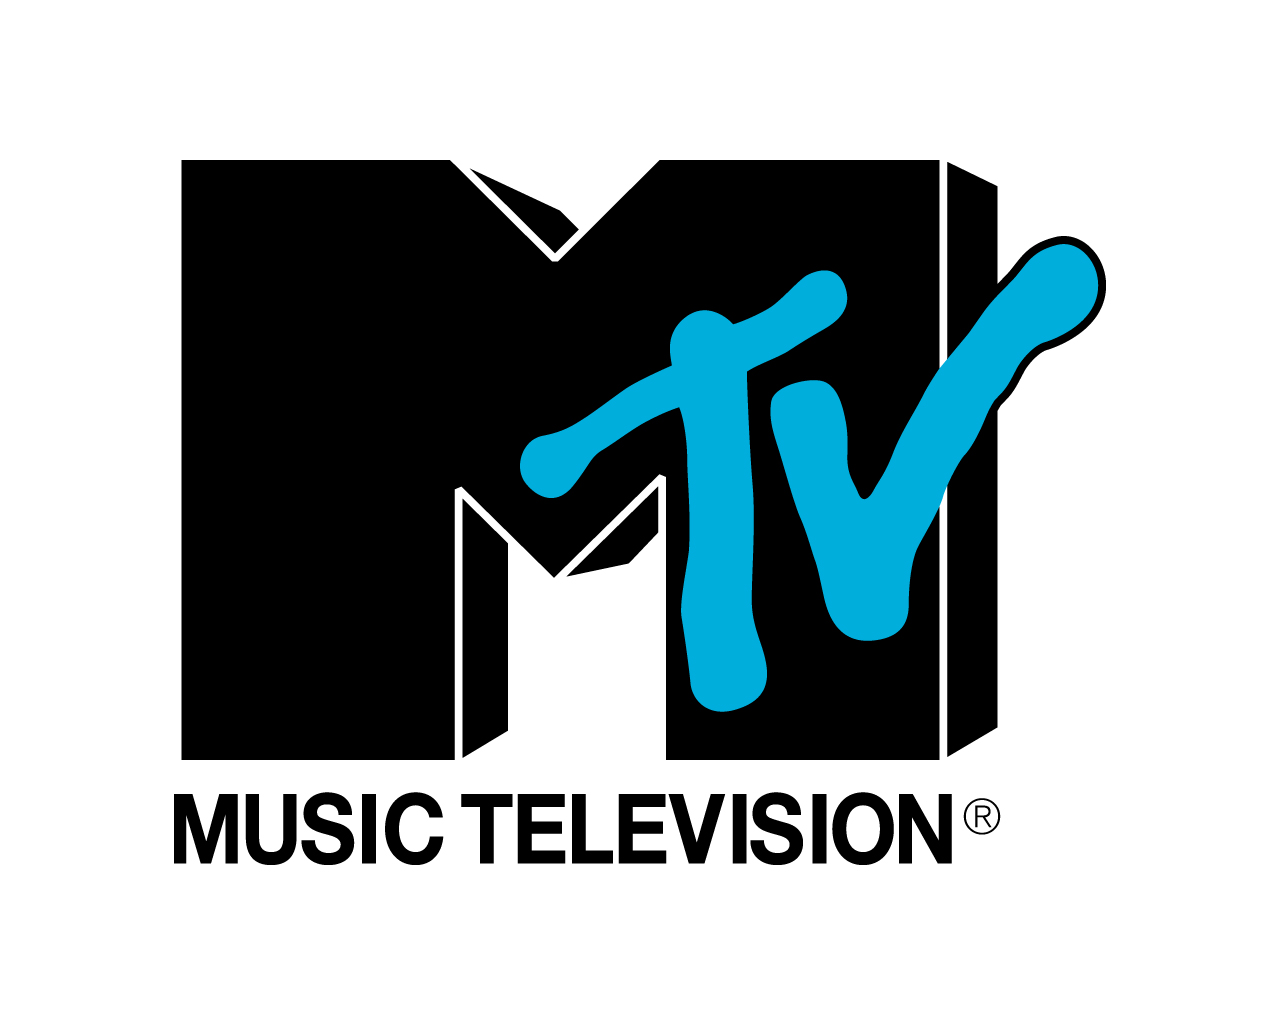 New MTV Show Looking for Men & Women